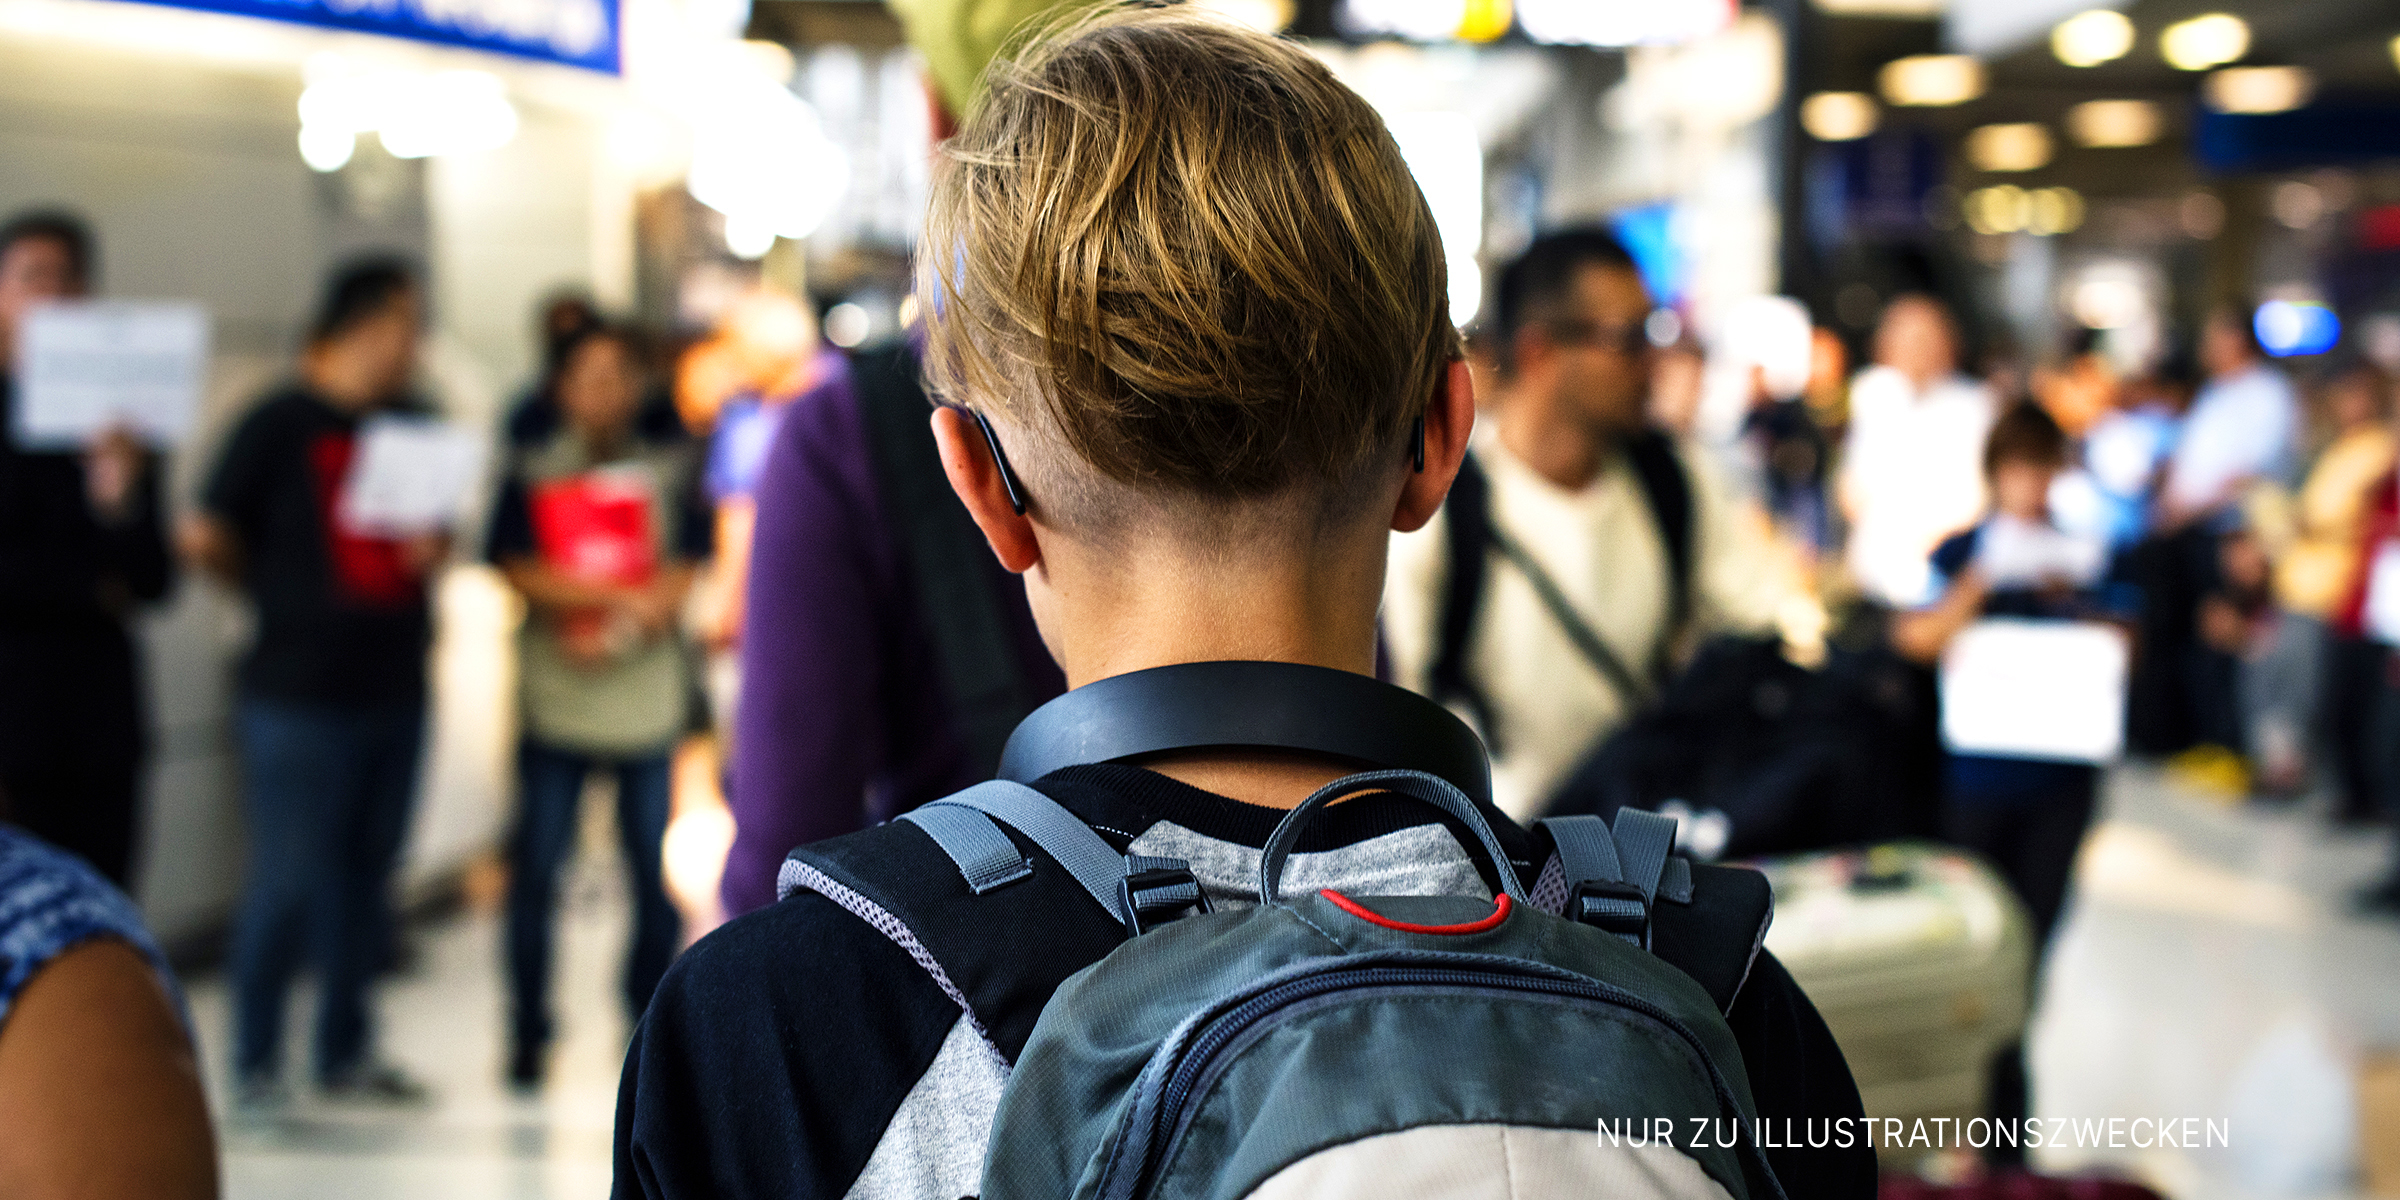 Junge auf dem Flughafen | Quelle: Shutterstock